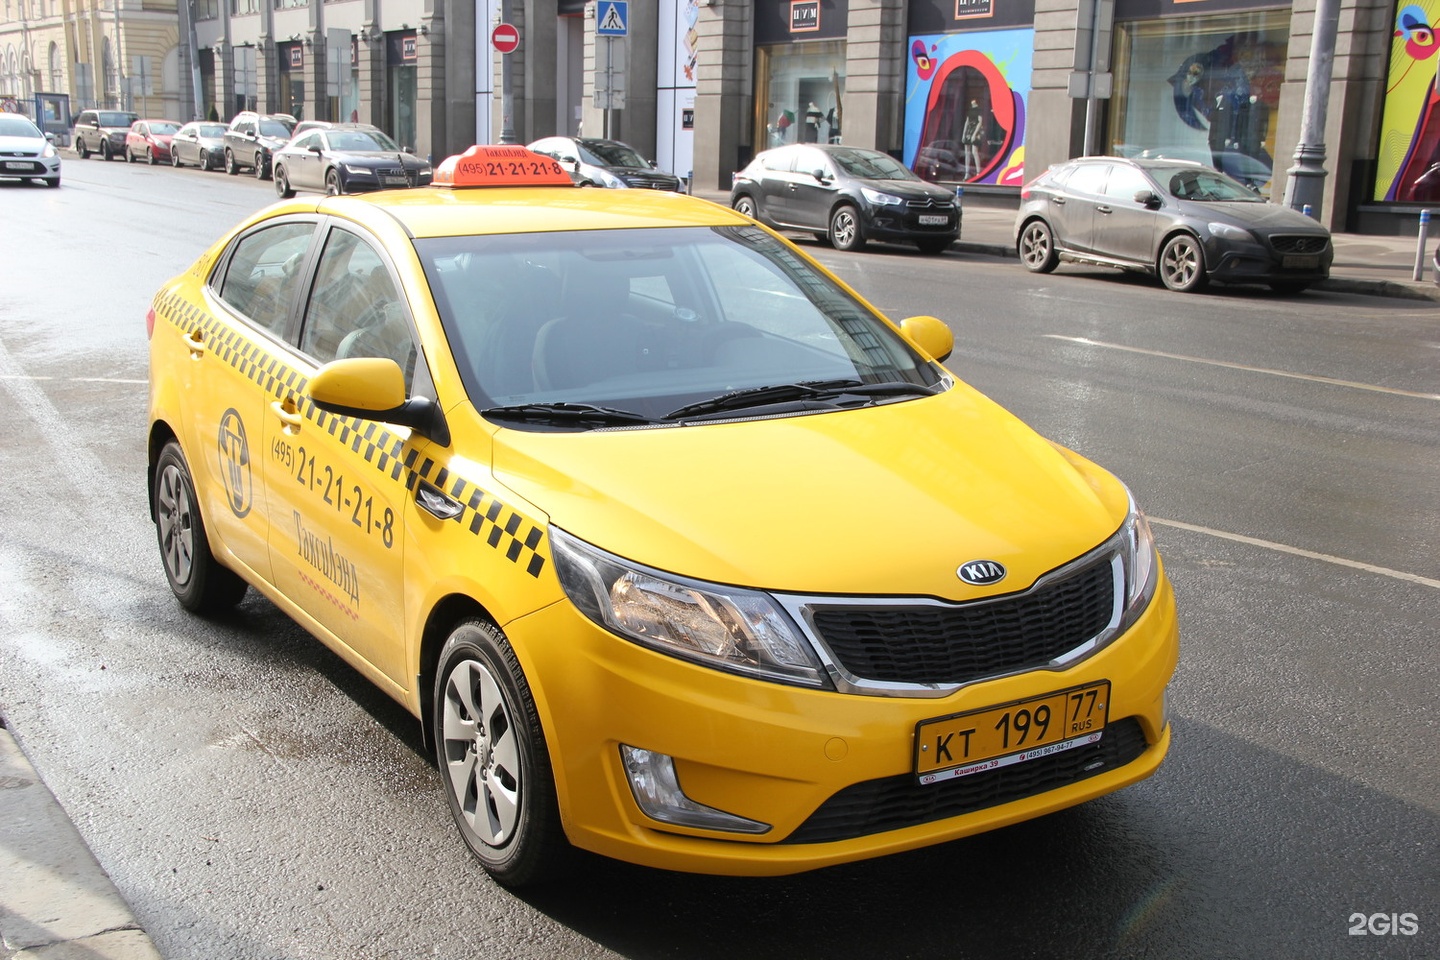 Заказать такси бесплатный номер. Машина "такси". Автомобиль «такси». Желтое такси. Такса в машине.